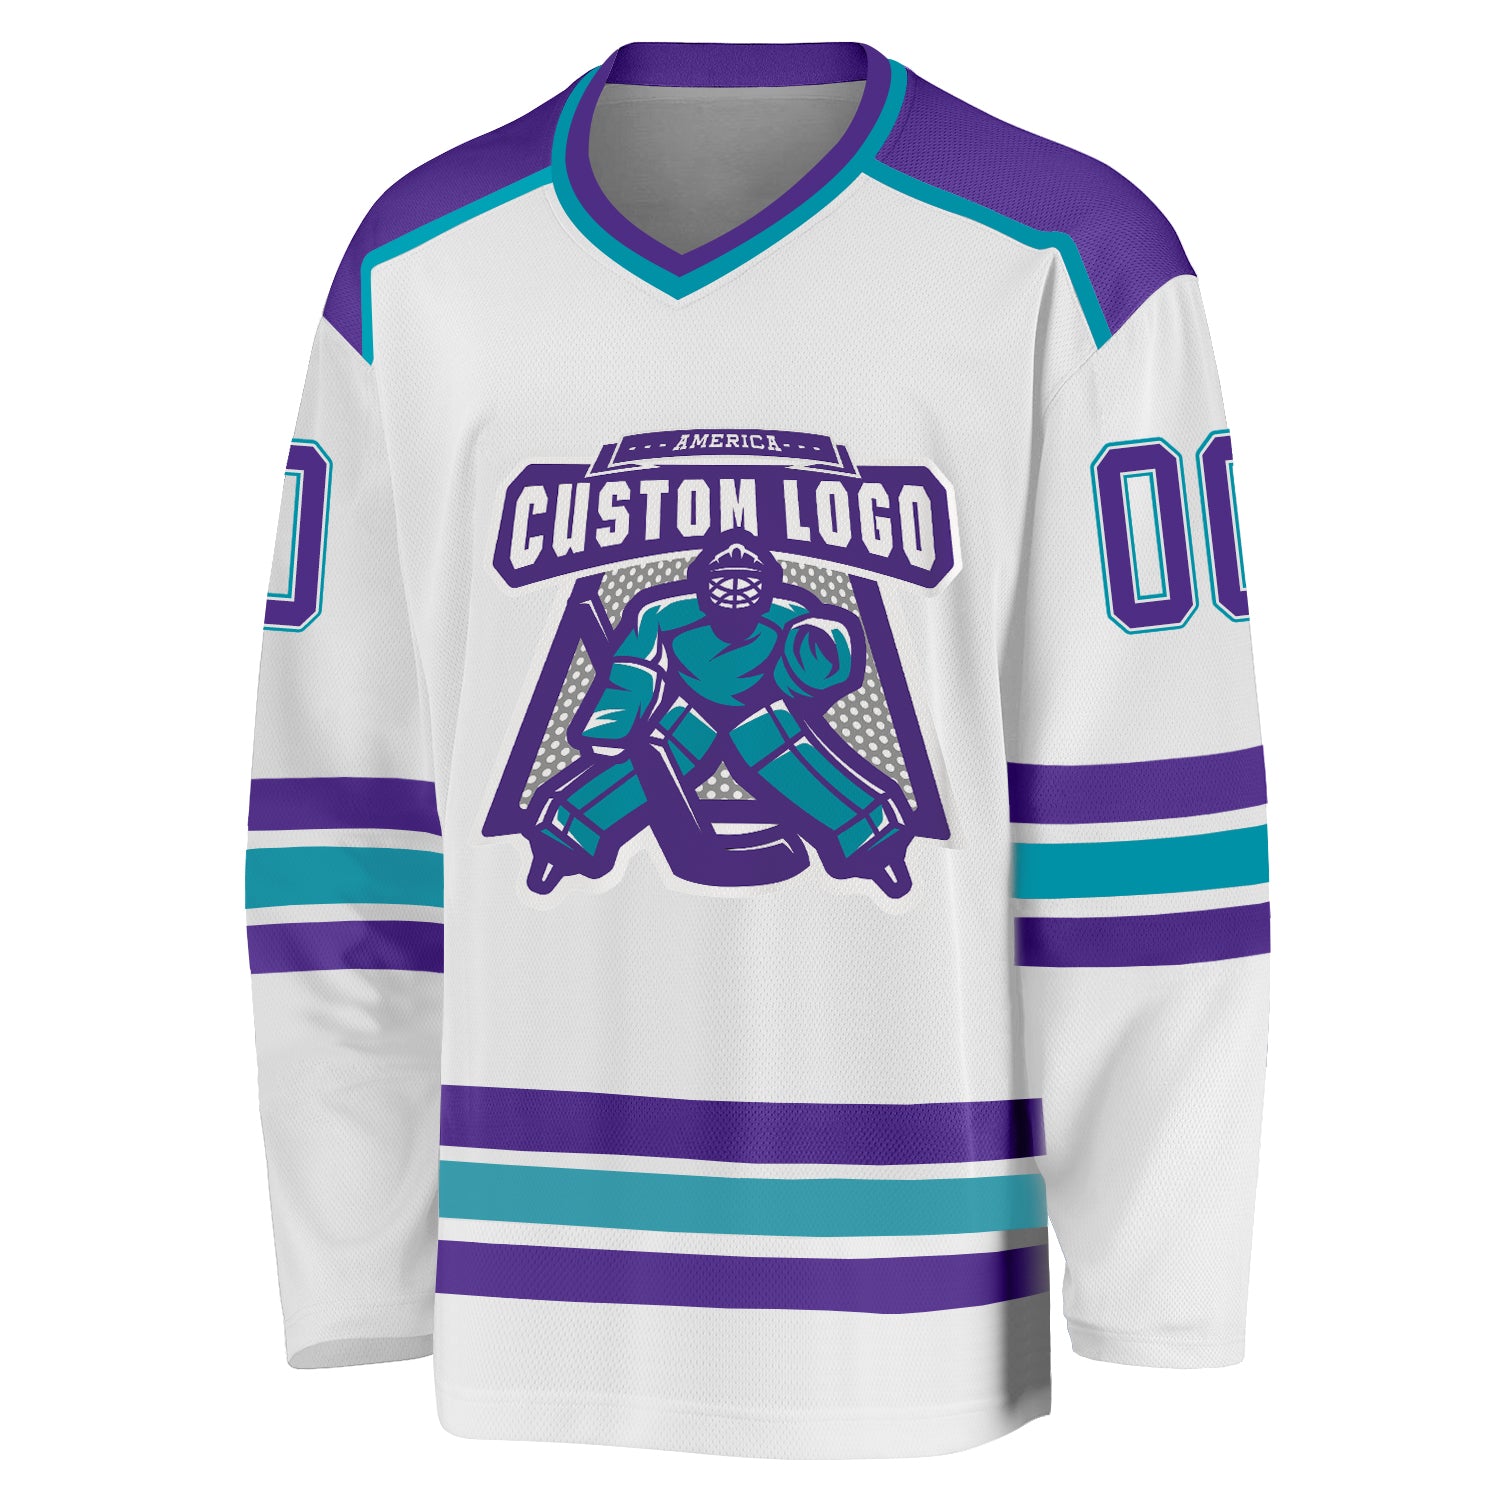 Custom Teal White-Purple Hockey Jersey Women's Size:S